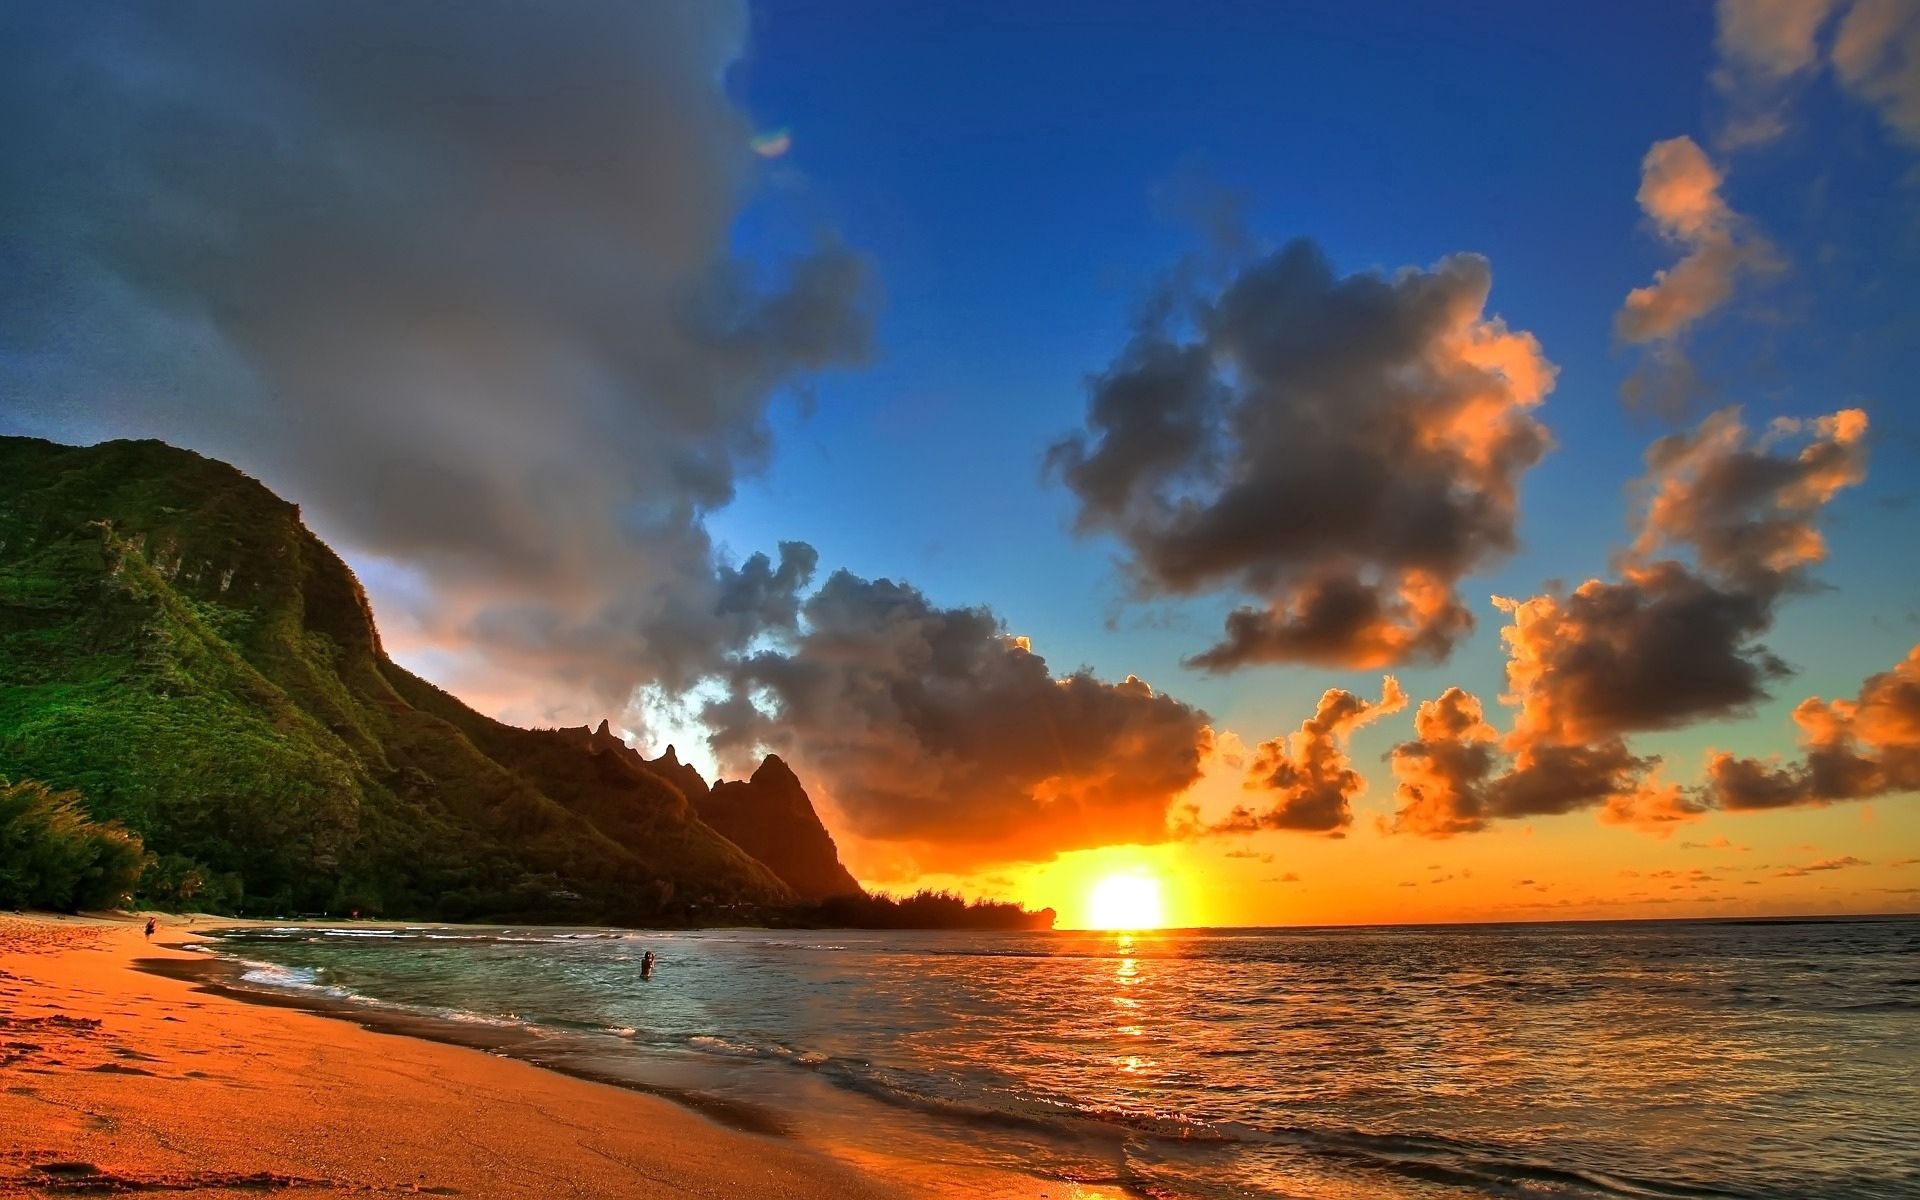 sun, shore, sunset, beach, clouds, nature, evening, mountains, sea, bank, calm cellphone